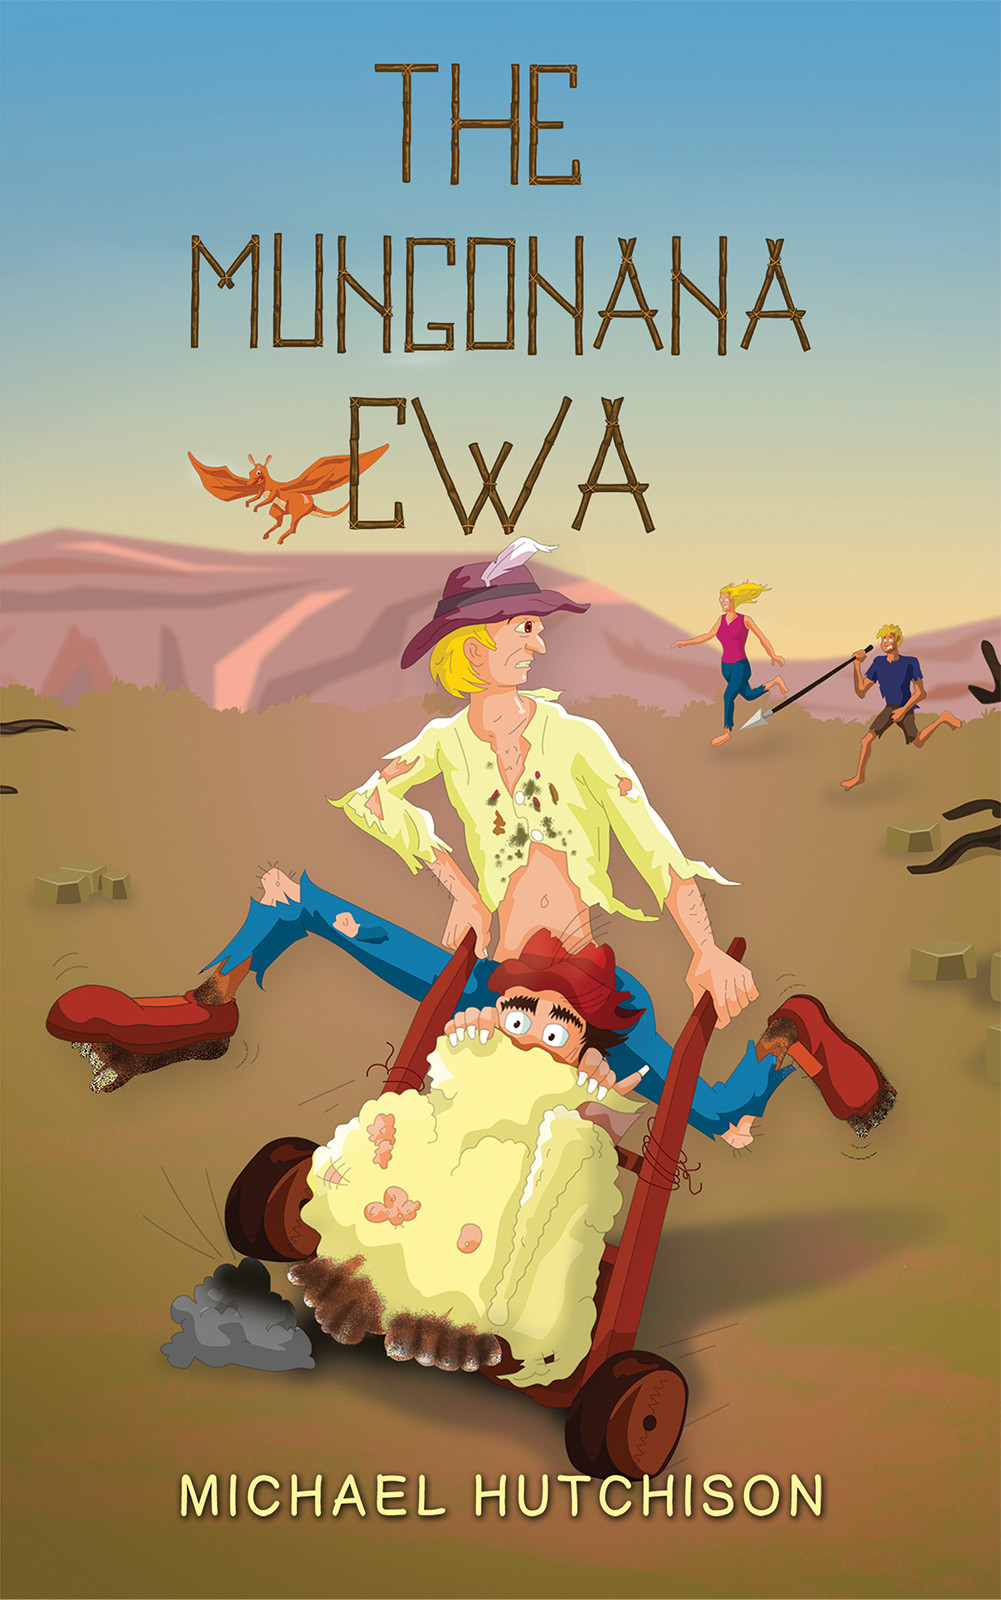 The Mungonana CWA